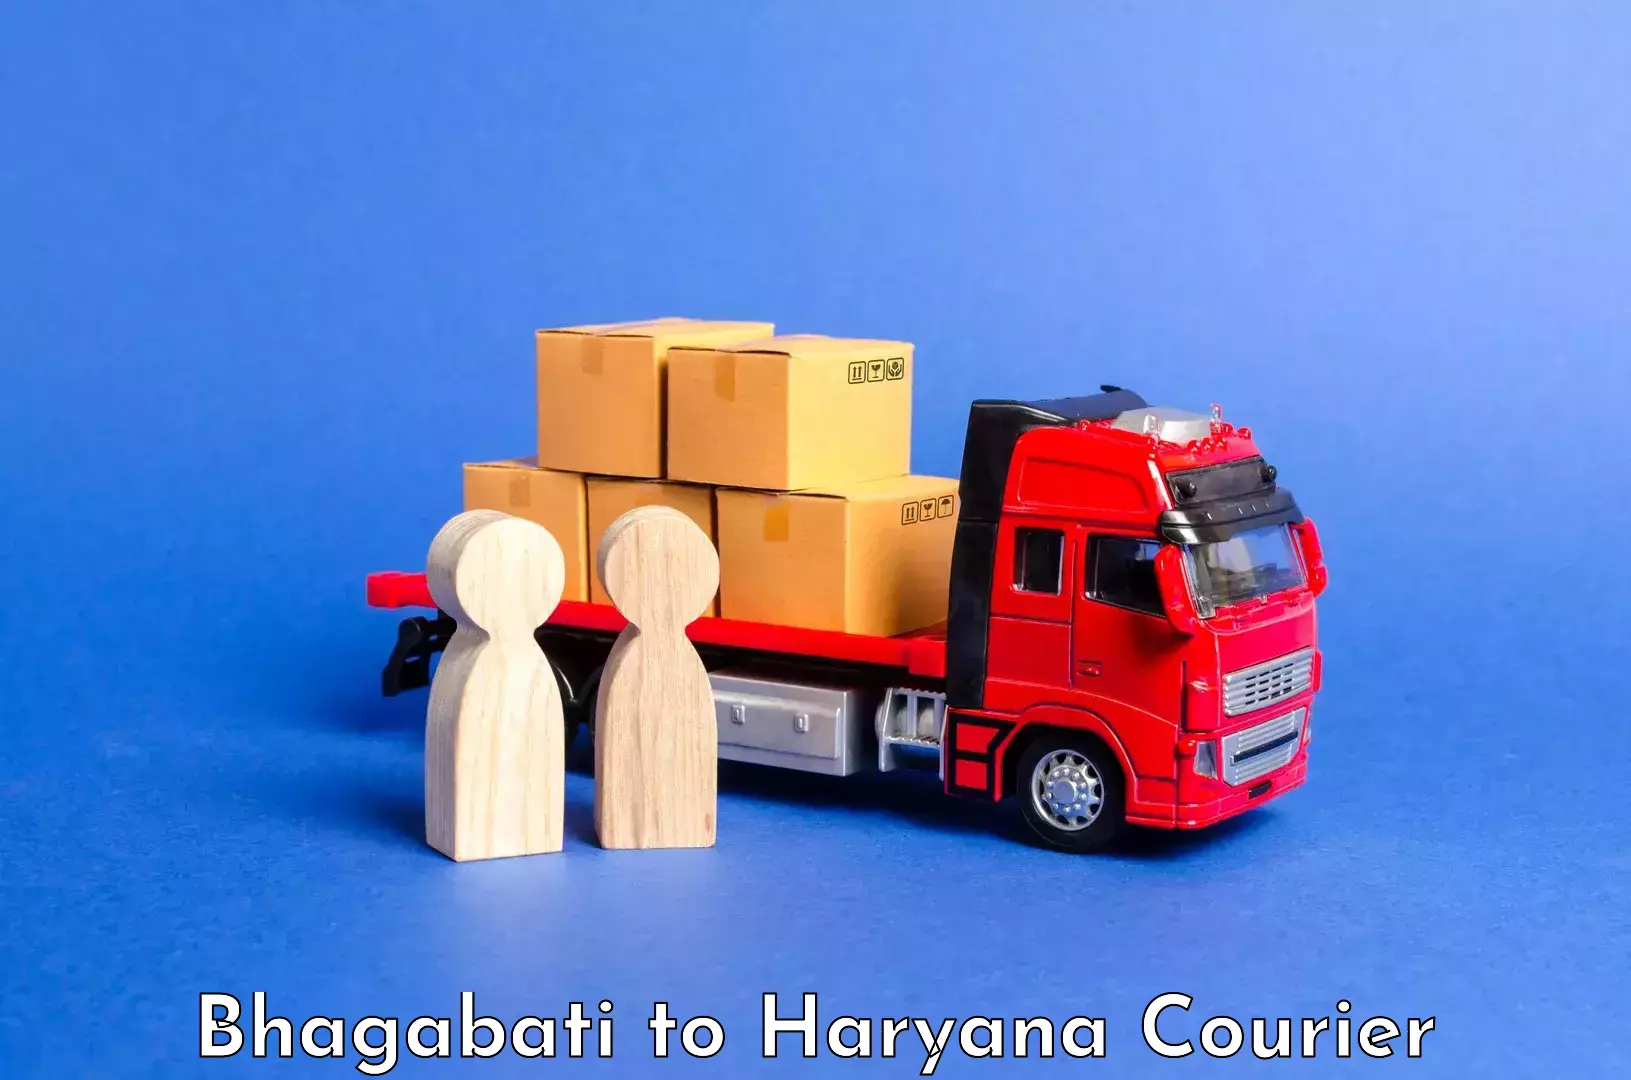 Affordable luggage shipping Bhagabati to Chaudhary Charan Singh Haryana Agricultural University Hisar